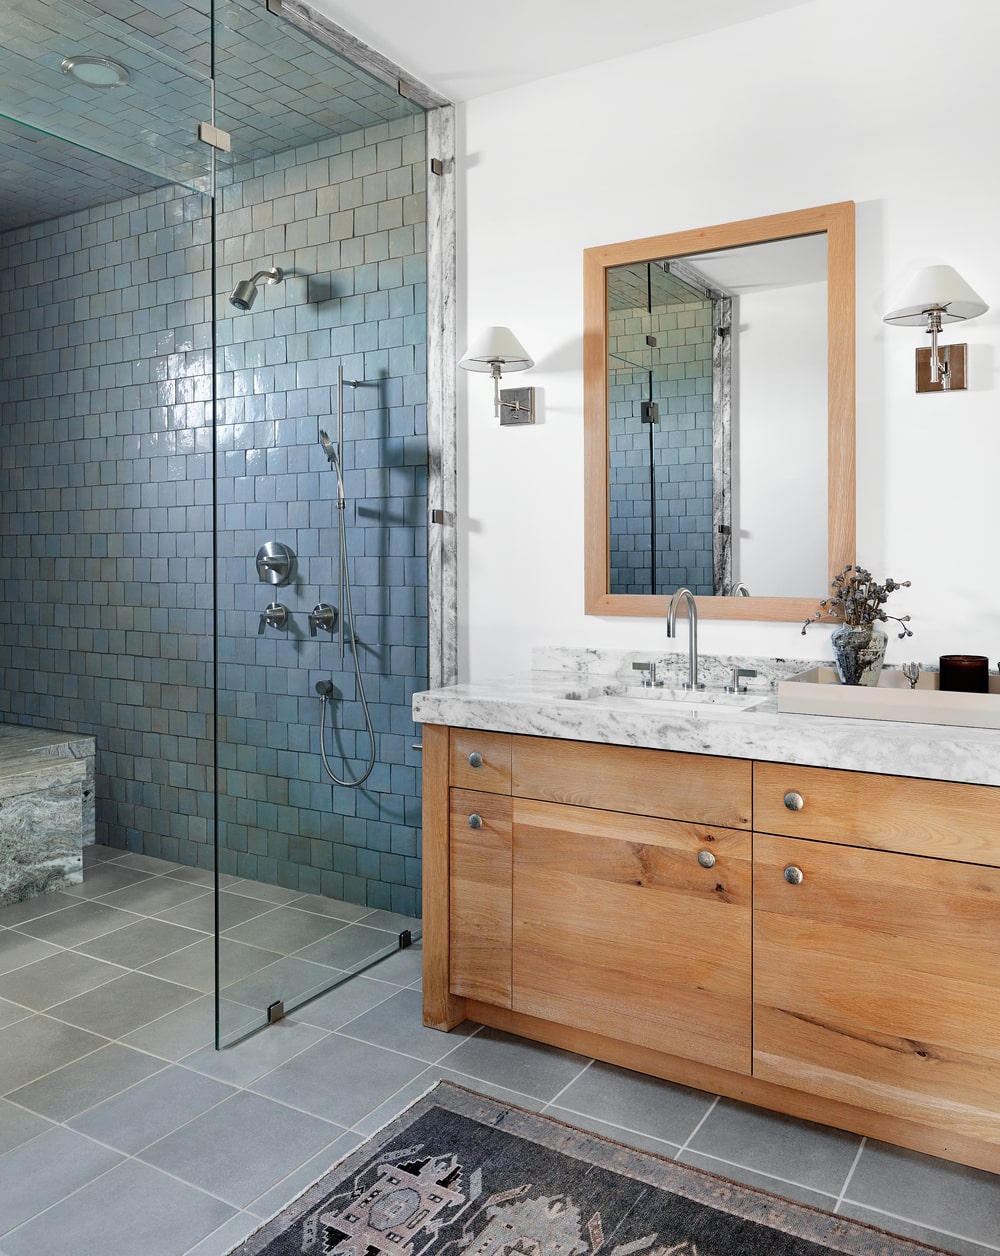 这是一个简单的浴室，有一个木制梳妆台，上面有一面配套的镜子，旁边是镶有深色瓷砖的玻璃淋浴区。